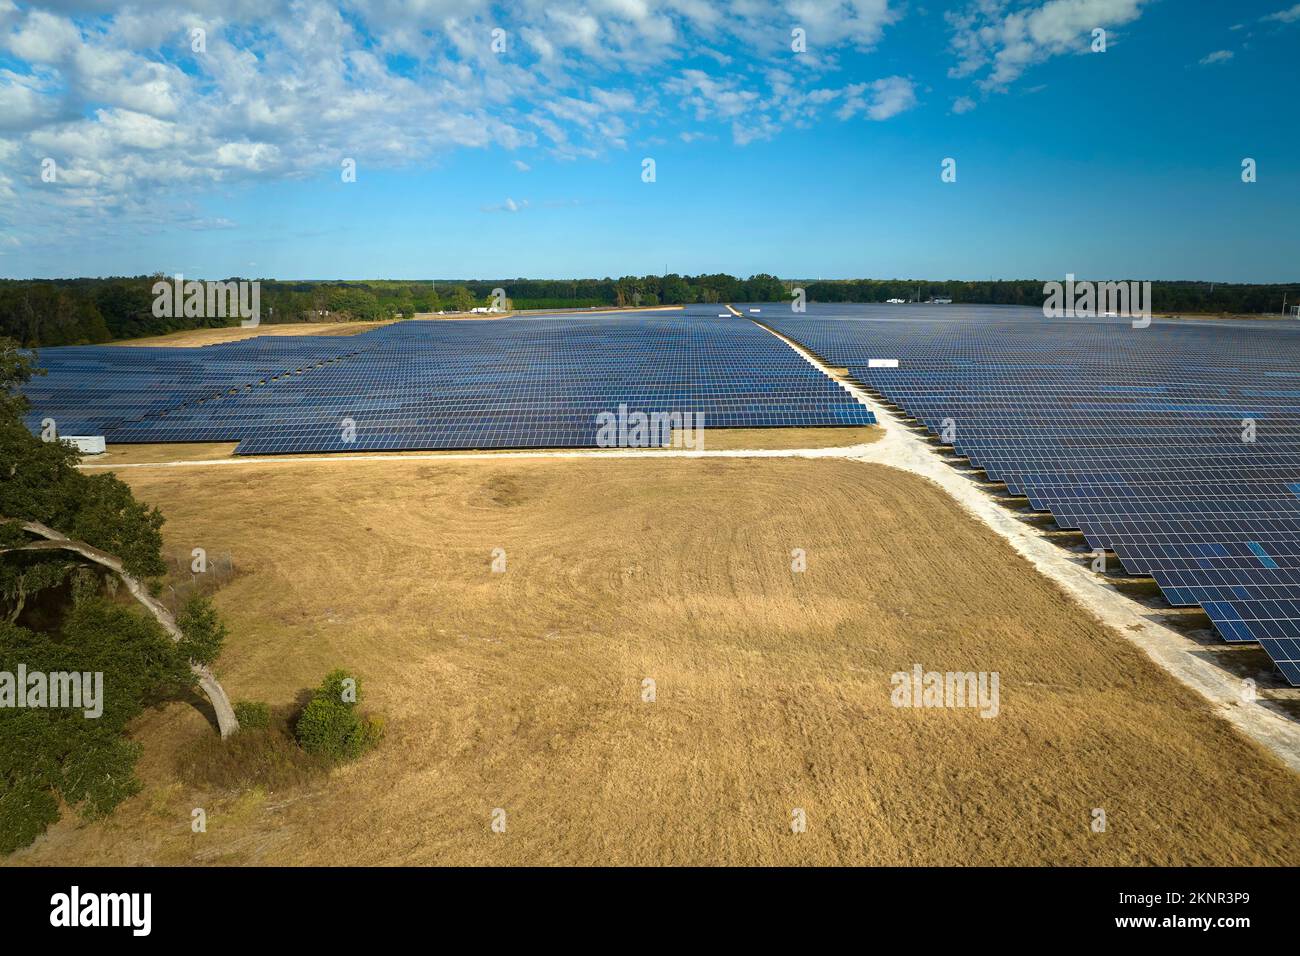 Luftaufnahme eines großen nachhaltigen Elektrokraftwerks mit Reihen von Photovoltaik-Solarmodulen zur Erzeugung sauberer elektrischer Energie. Konzept von Stockfoto